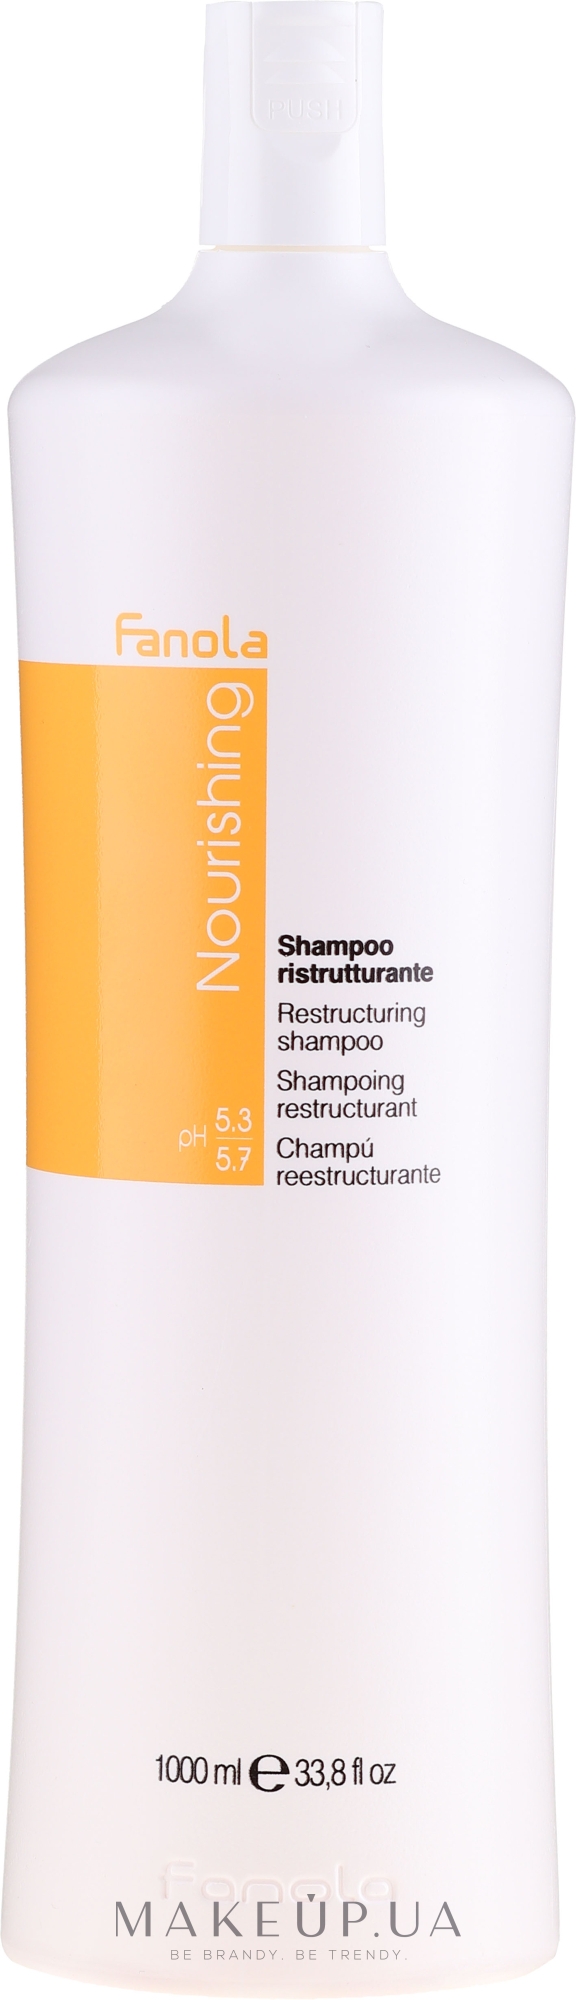 Реструктуризуючий шампунь для сухого волосся - Fanola Nutry Care Restructuring Shampoo — фото 1000ml